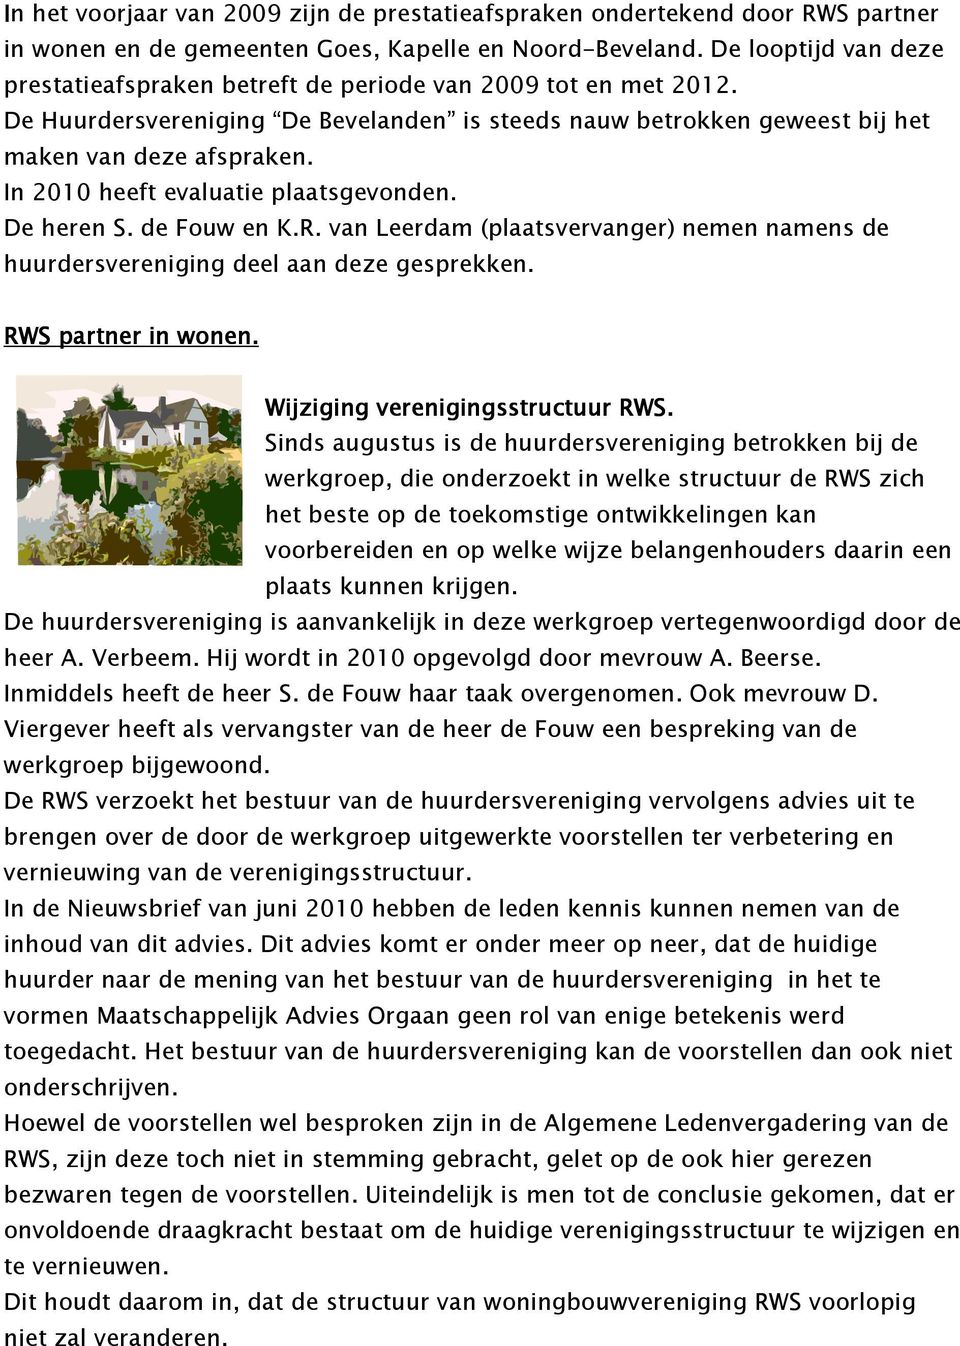 In 2010 heeft evaluatie plaatsgevonden. De heren S. de Fouw en K.R. van Leerdam (plaatsvervanger) nemen namens de huurdersvereniging deel aan deze gesprekken. RWS partner in wonen.